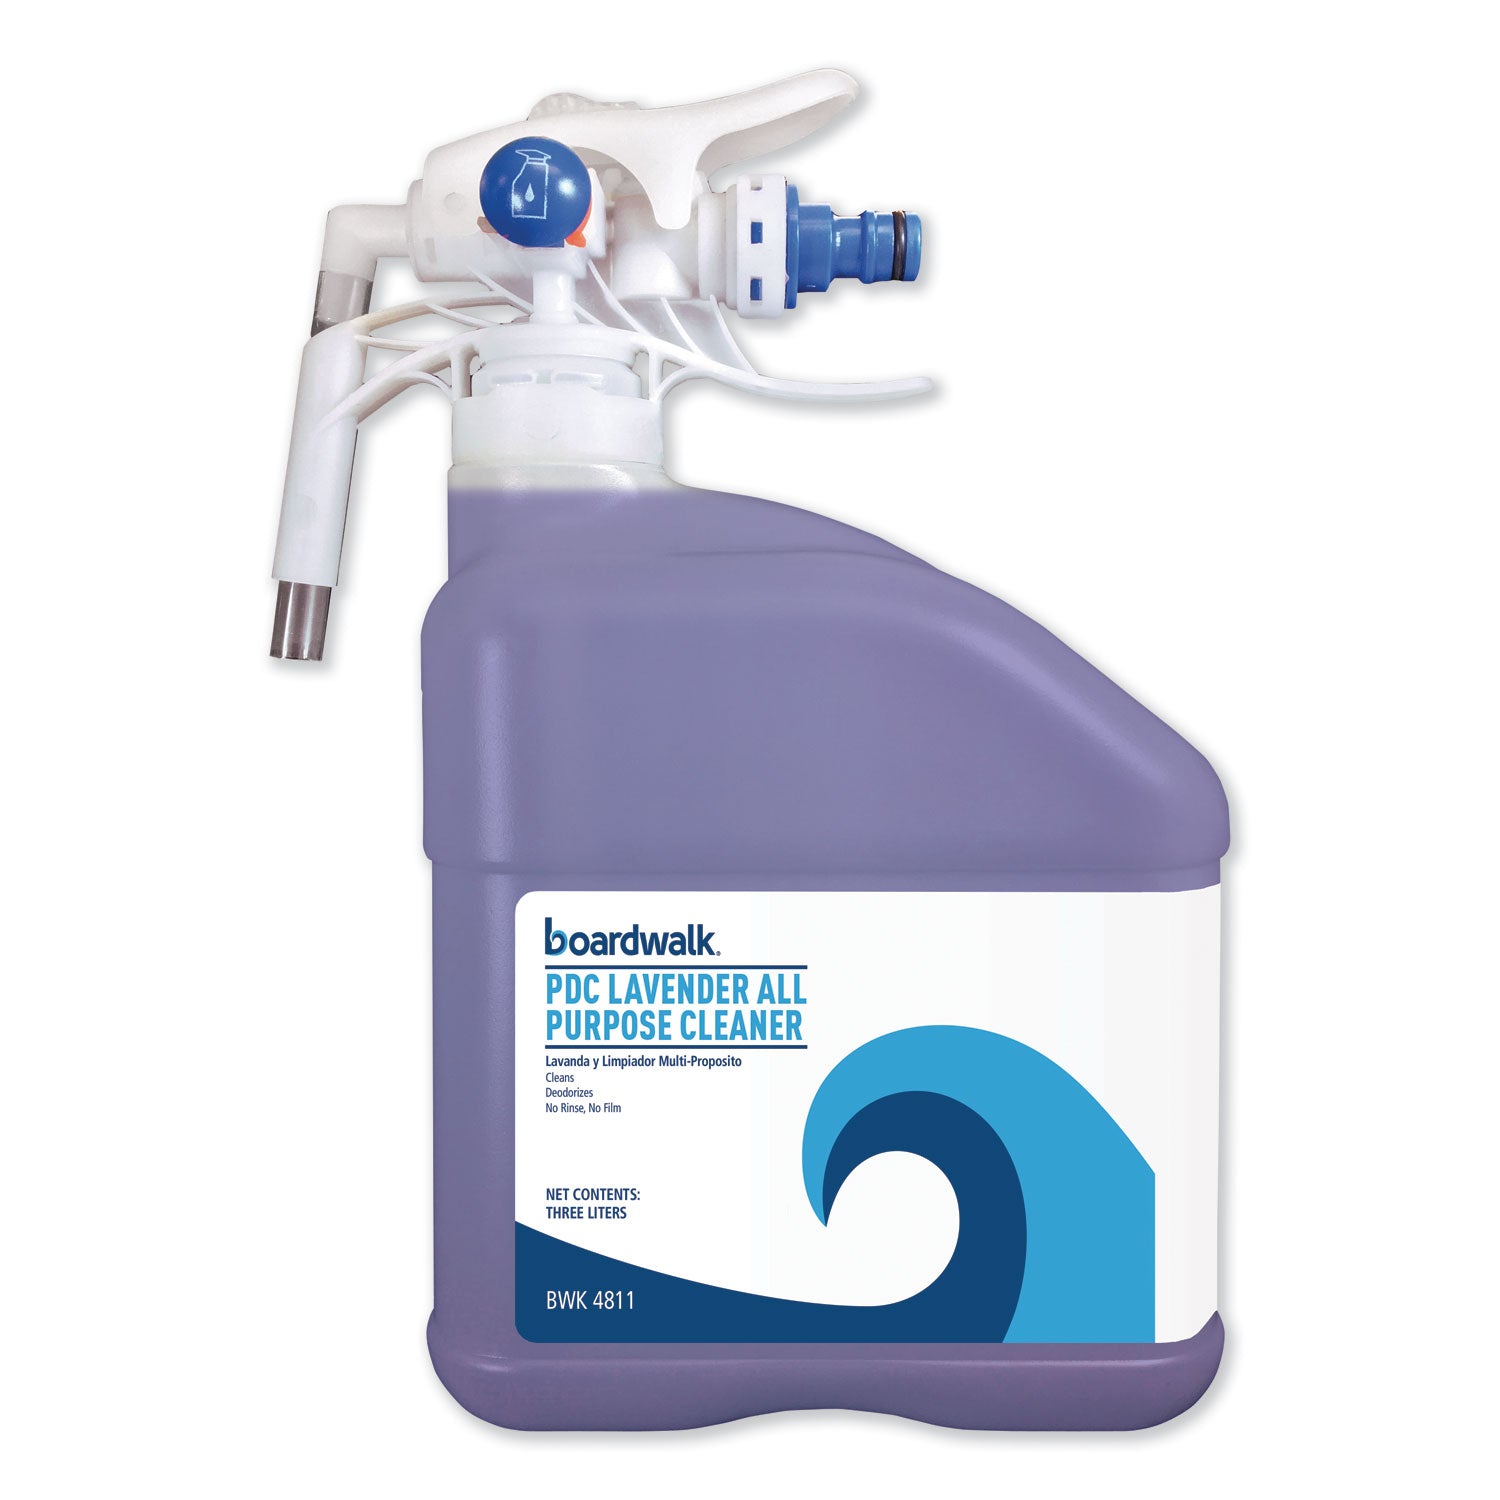 pdc-all-purpose-cleaner-lavender-scent-3-liter-bottle_bwk4811ea - 1